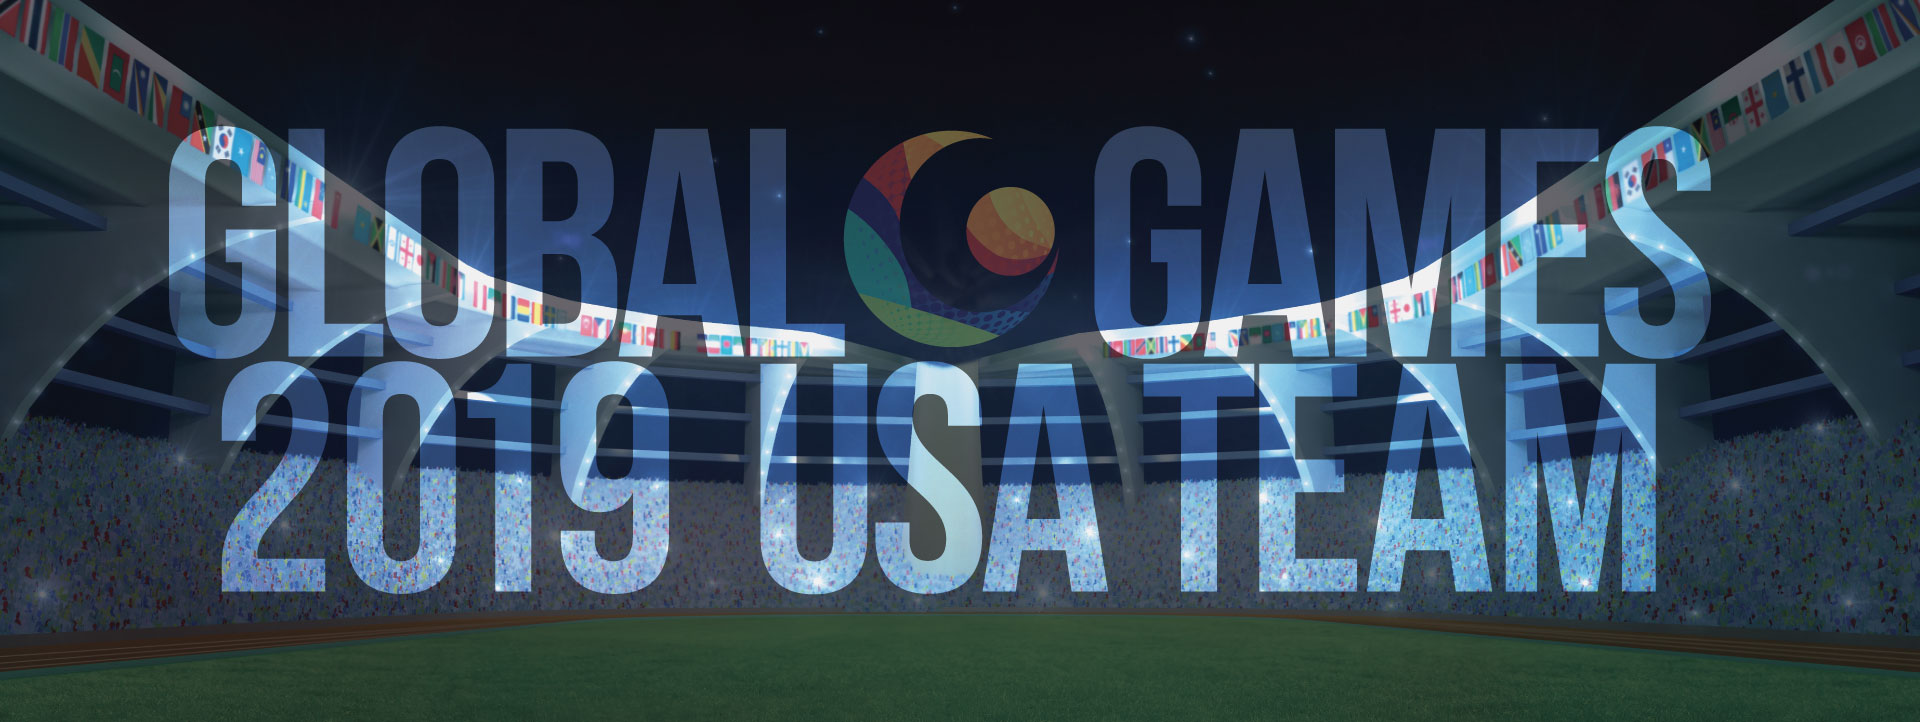 Global Games 2019 USA Team